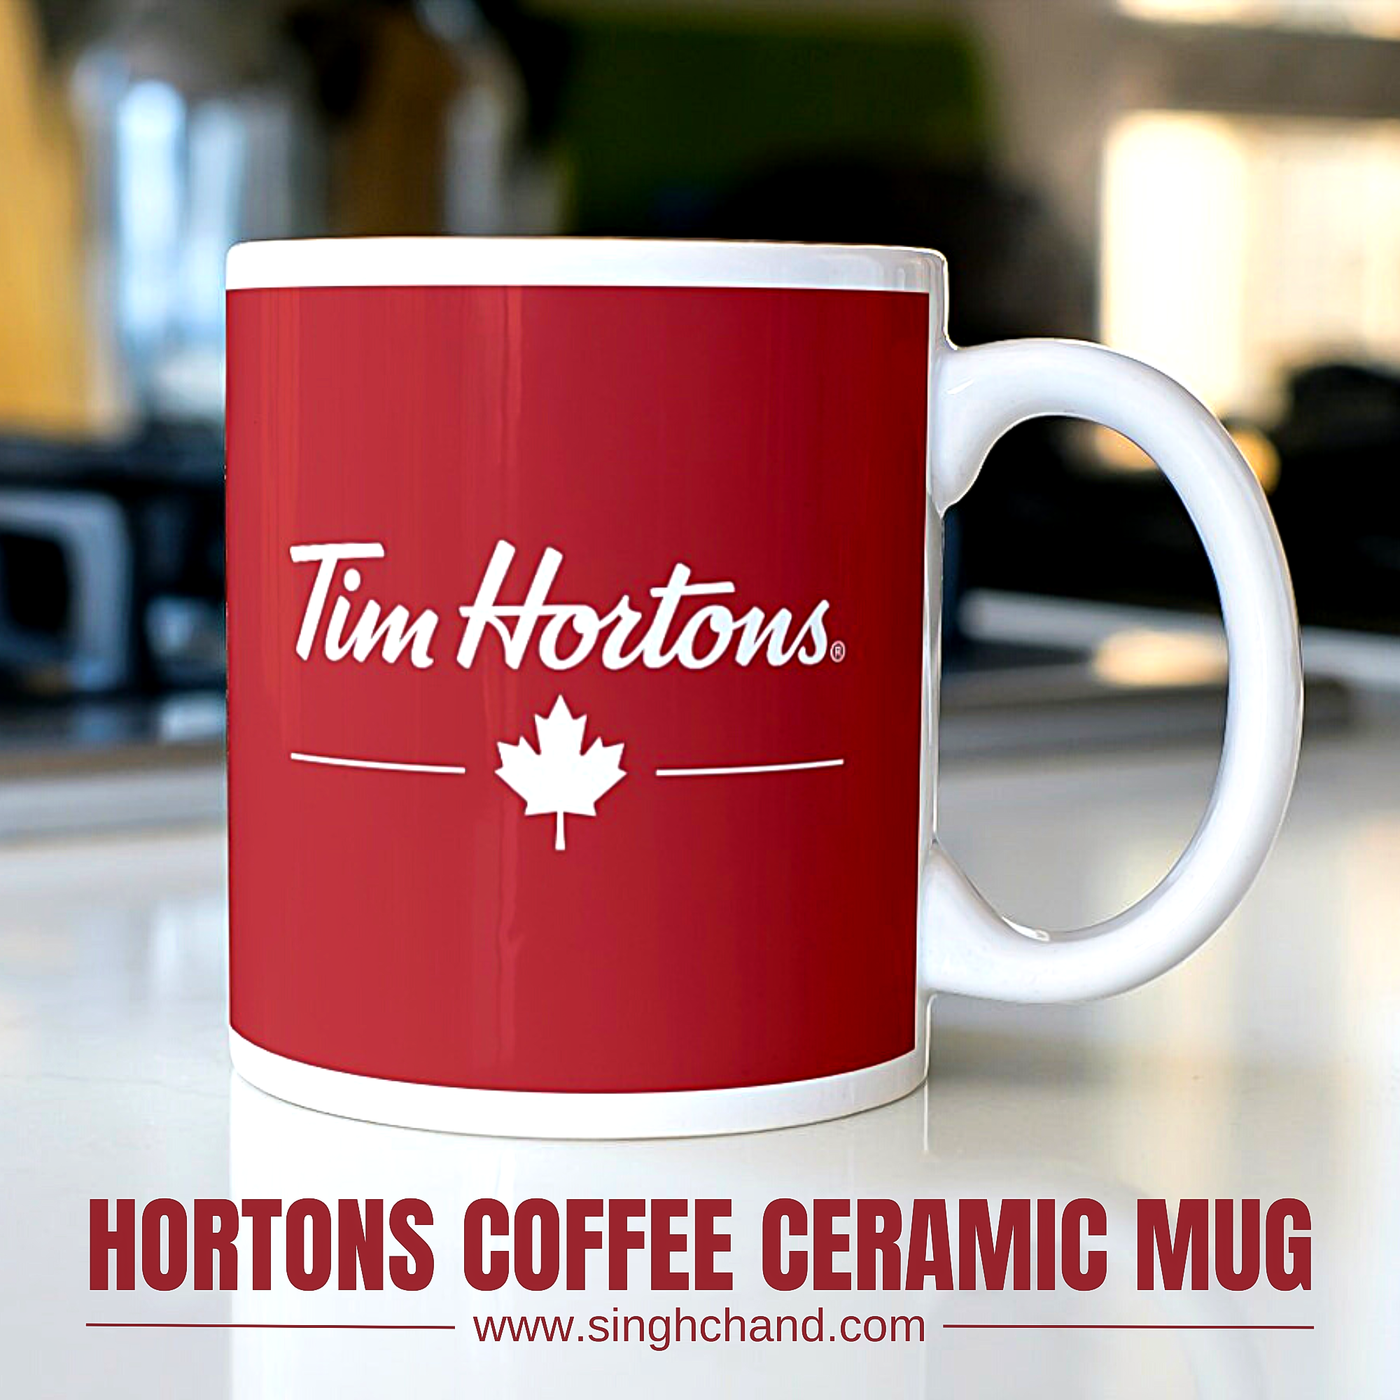 HORTONS COFFEE CERAMIC MUG